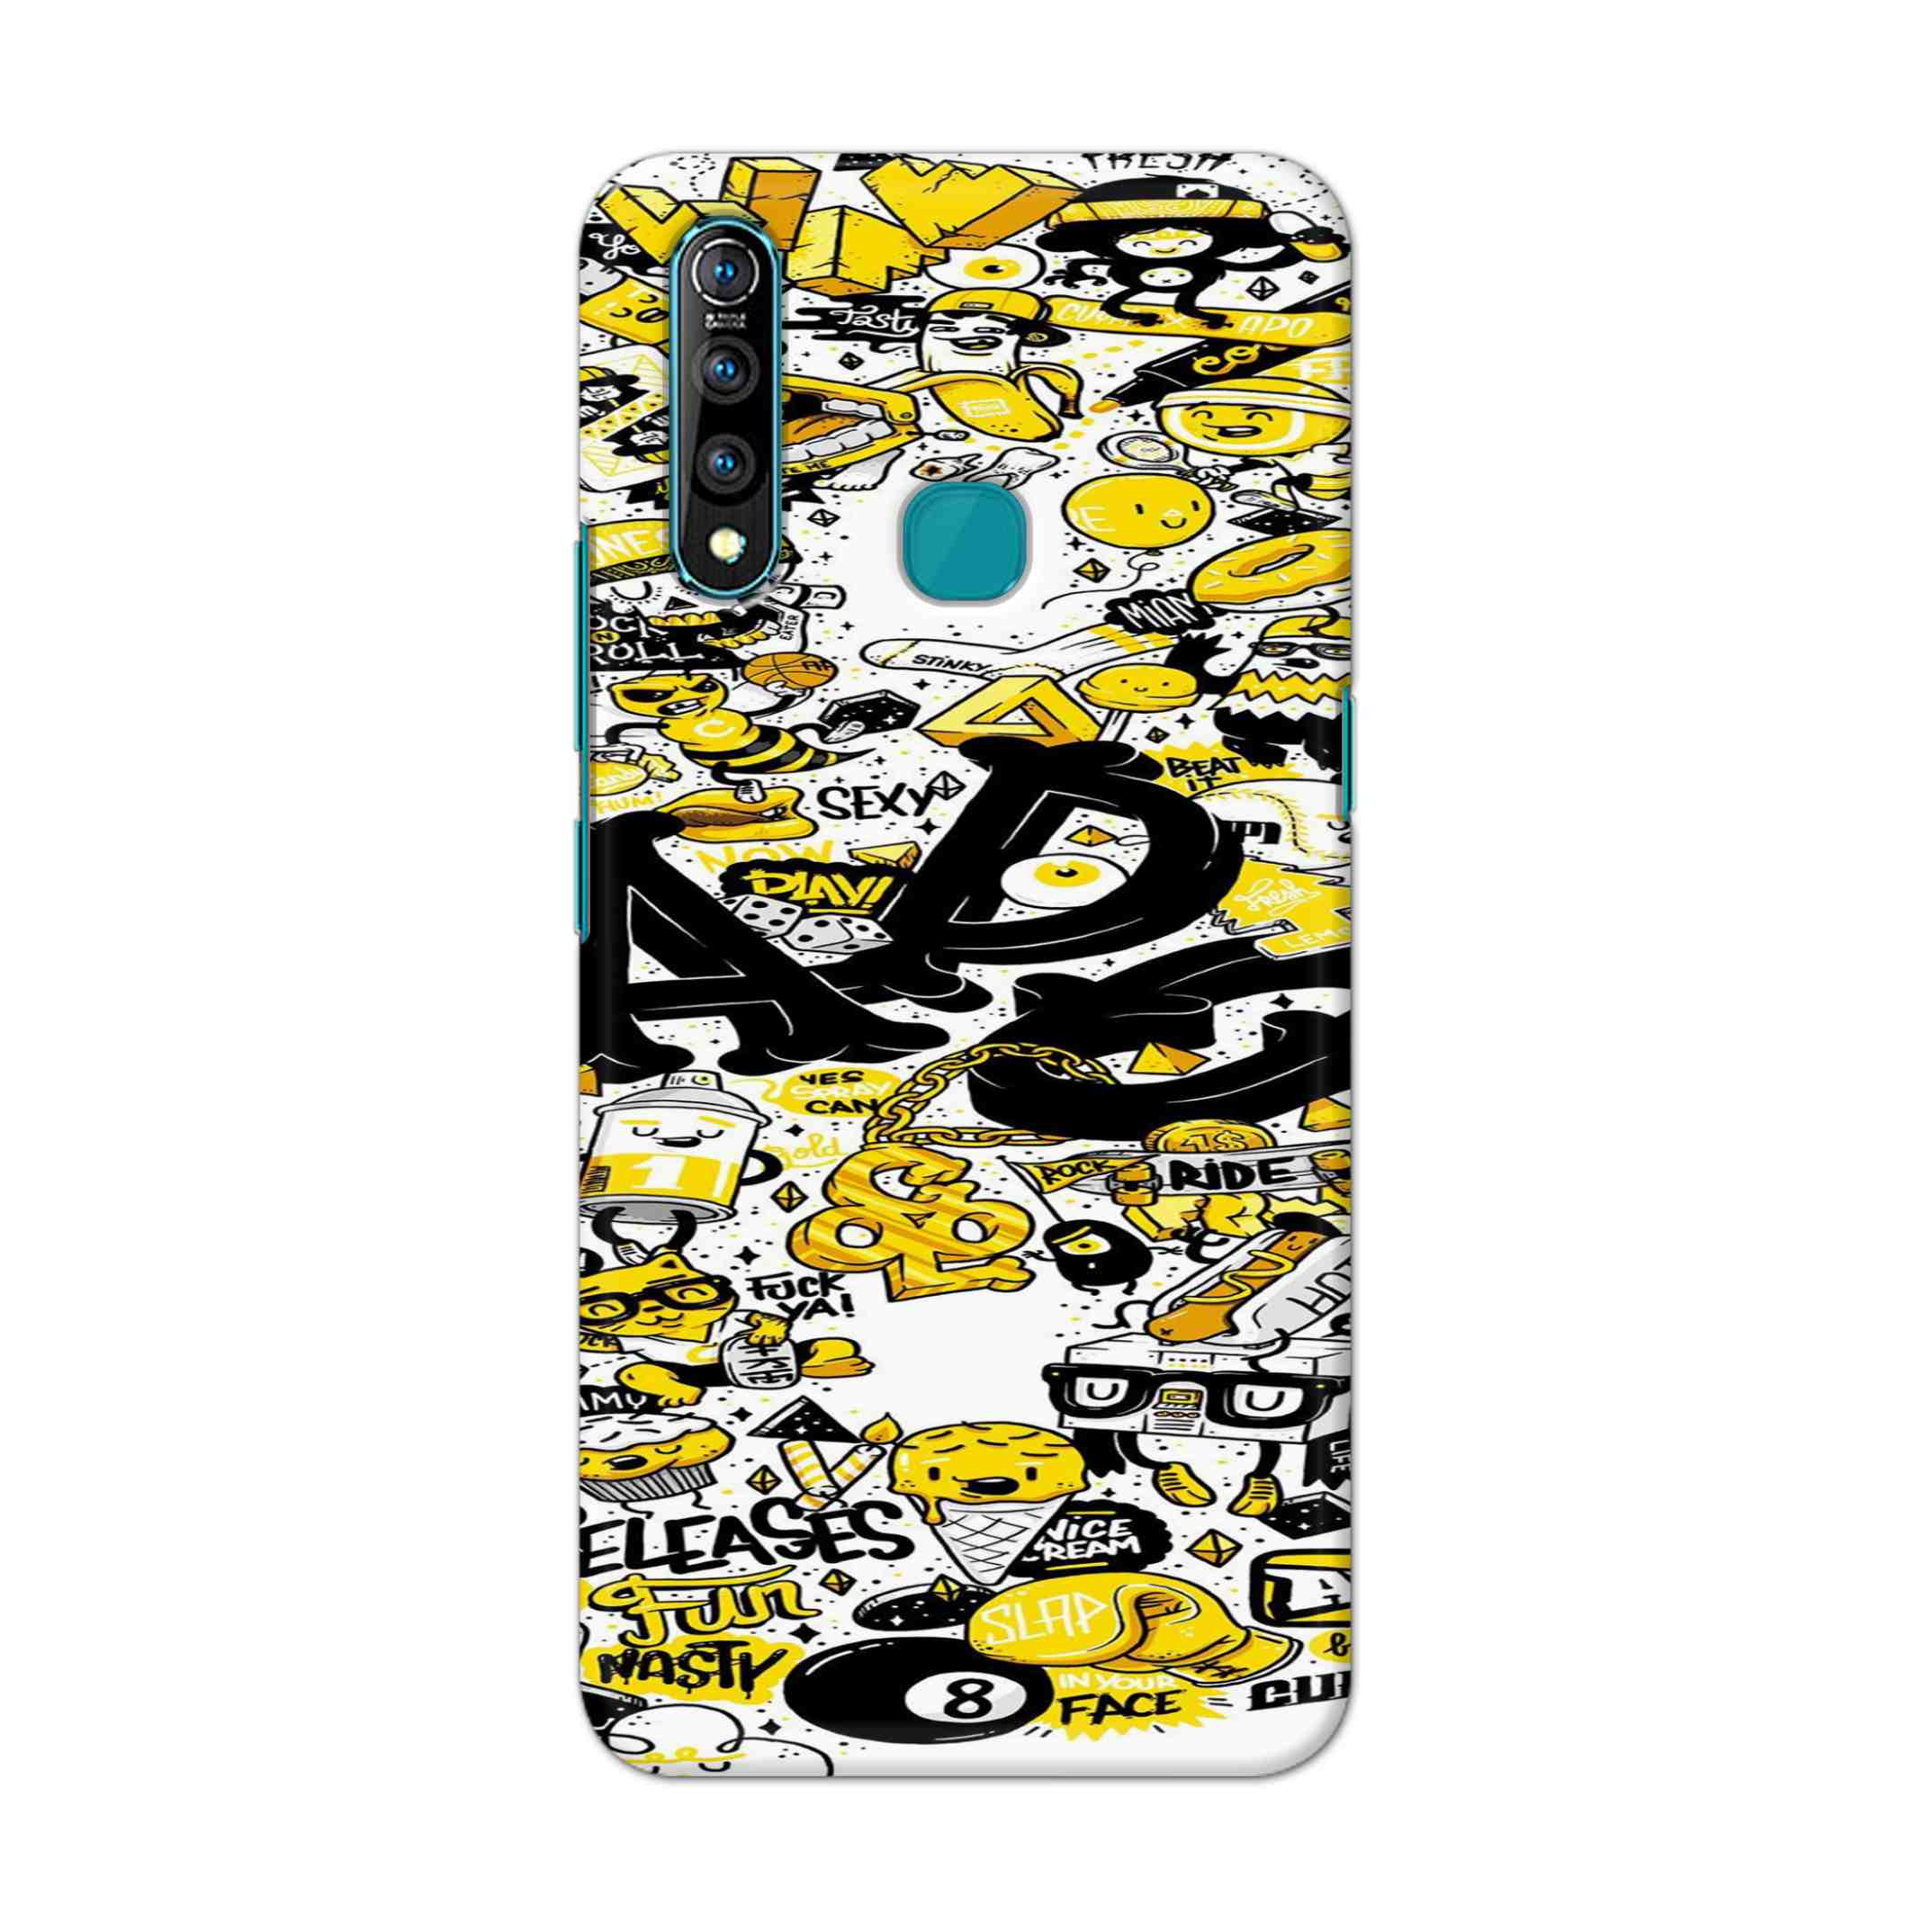 Buy Ado Hard Back Mobile Phone Case Cover For Vivo Z1 pro Online